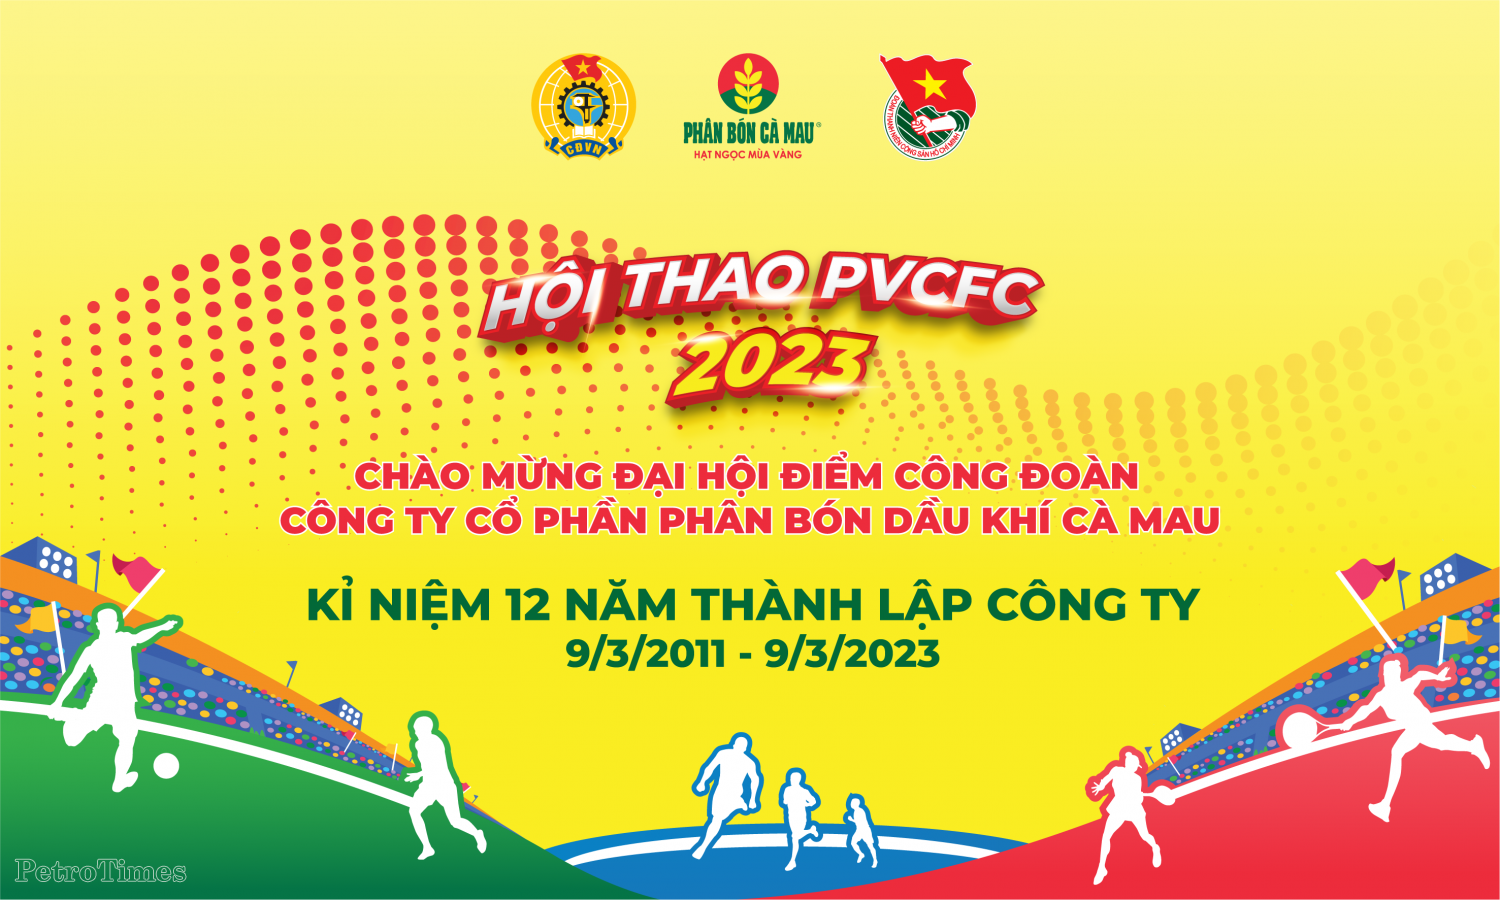 PVCFC tổ chức hội thao đặc sắc chào mừng Đại hội điểm Công đoàn lần III và 12 năm thành lập